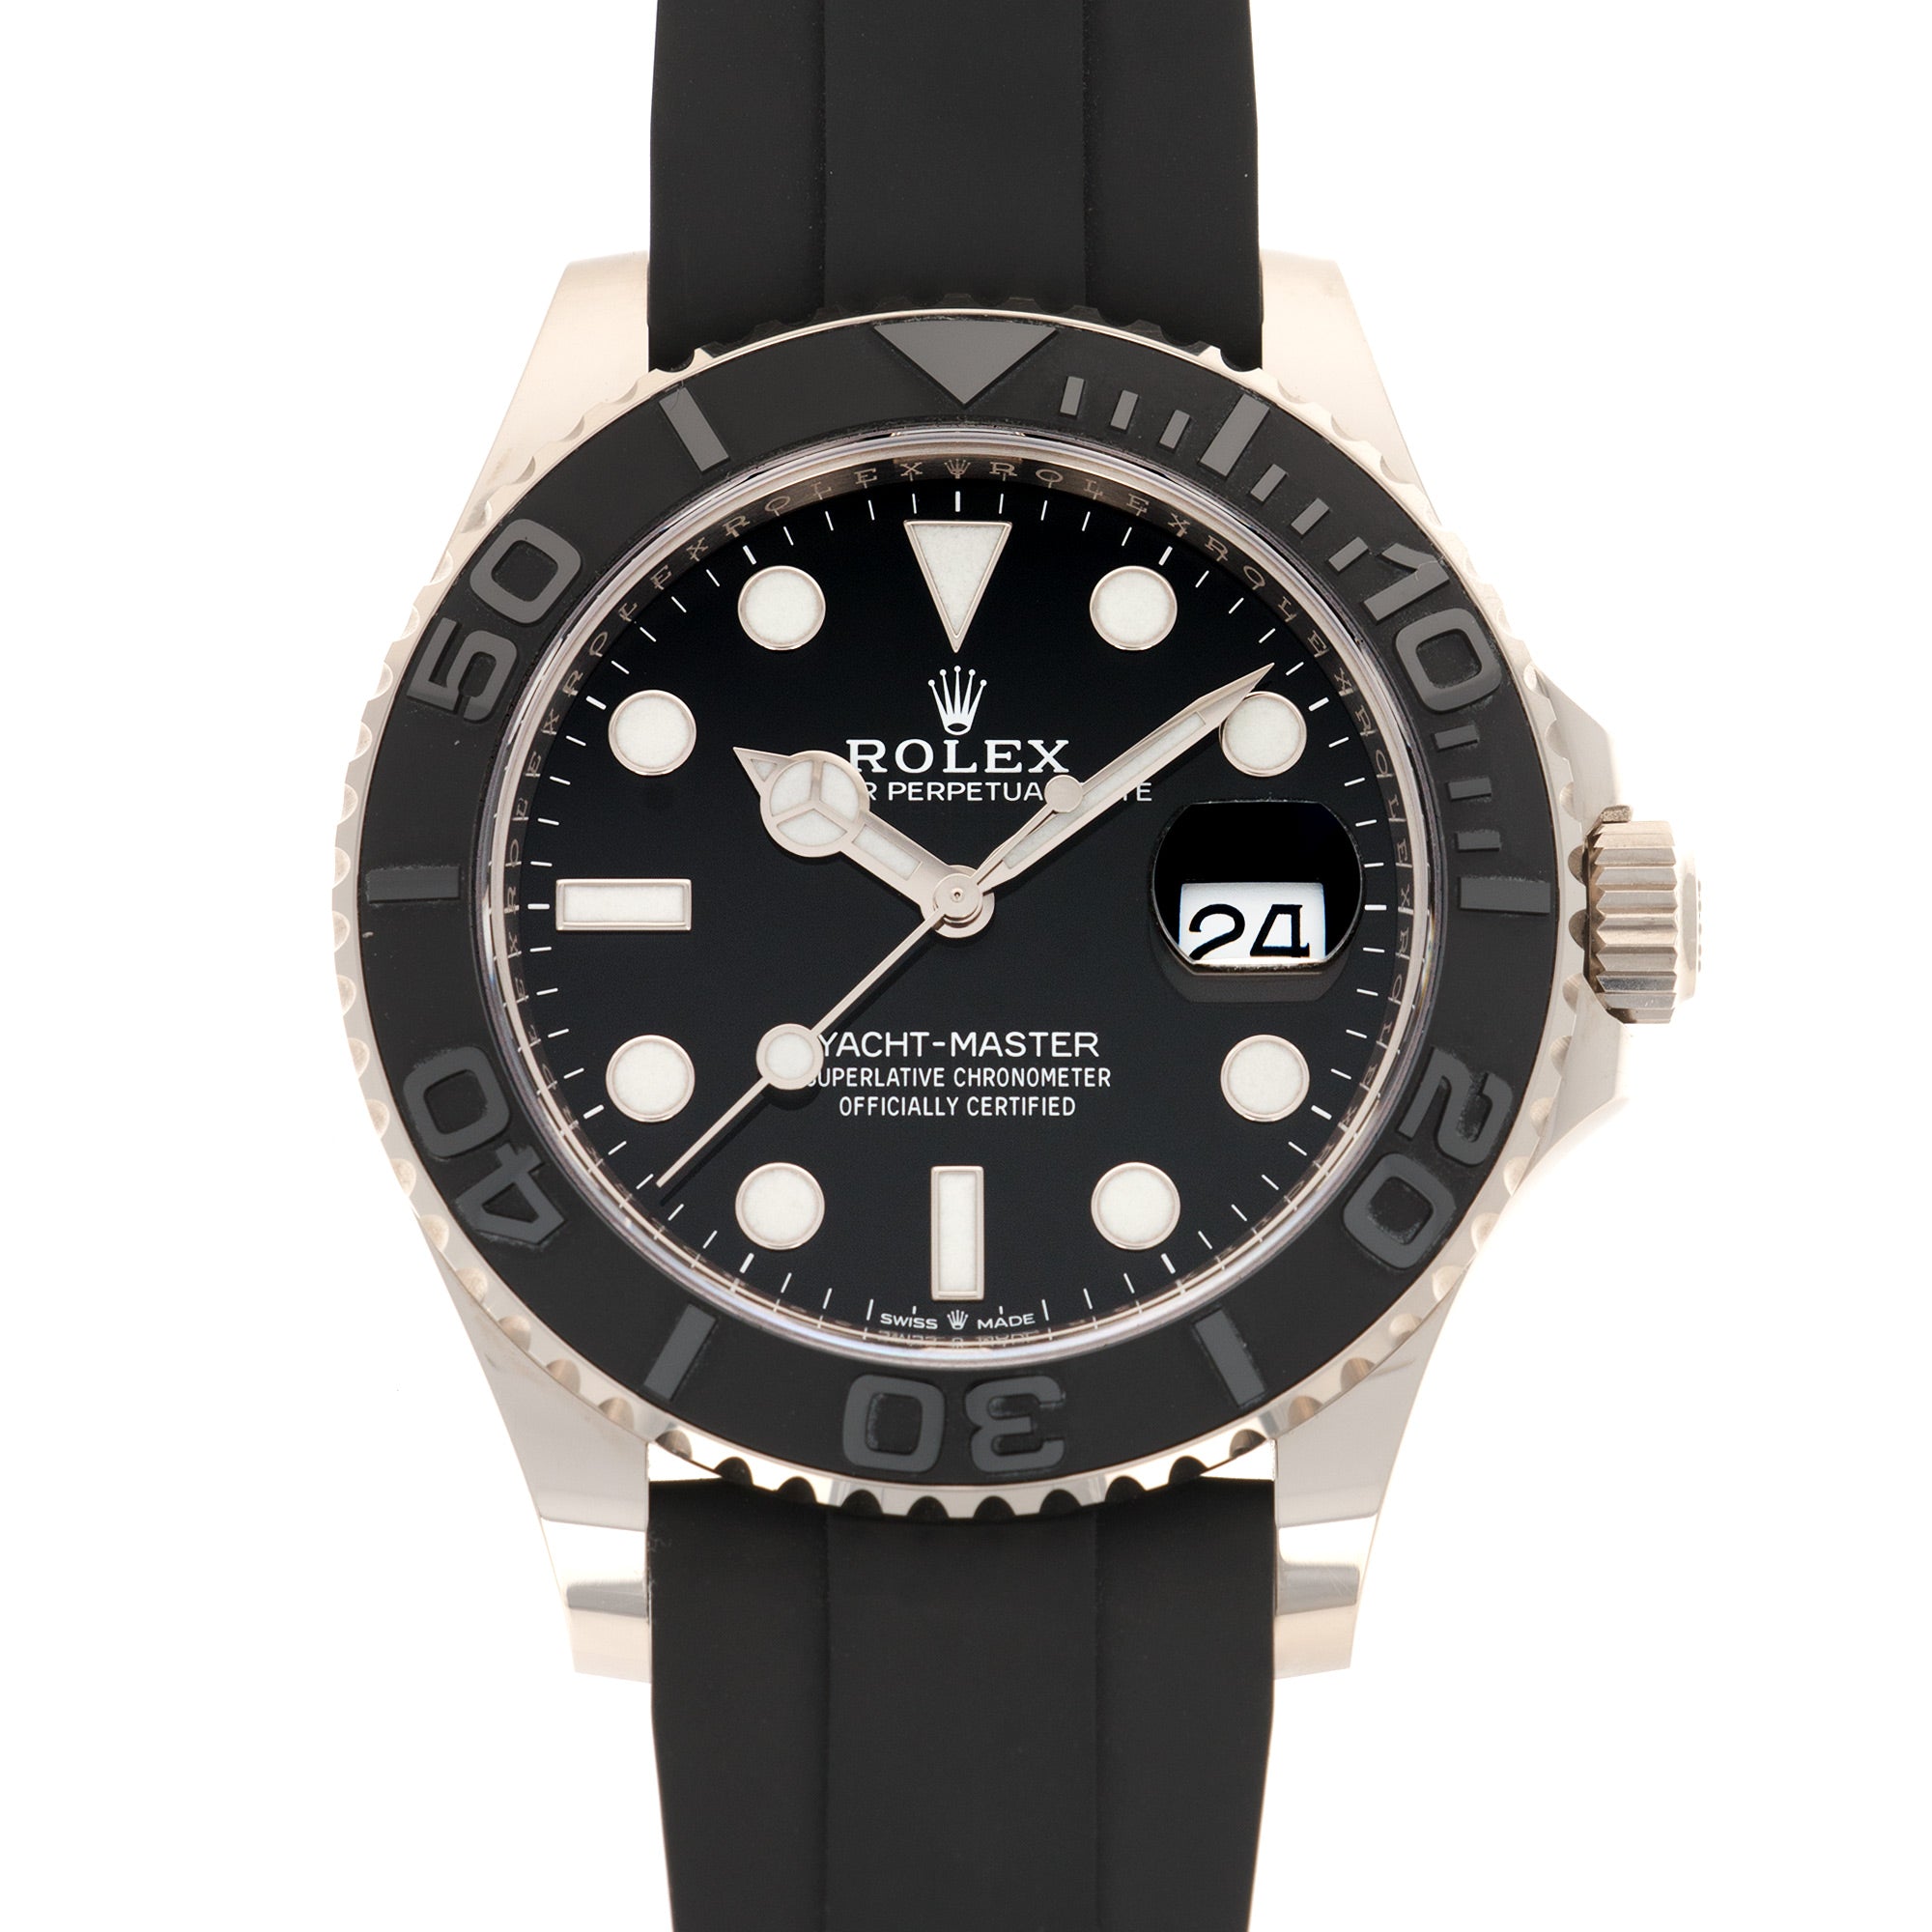 Rolex - Rolex White Gold Yacht-Master 42 Watch Ref. 226659 - The Keystone Watches